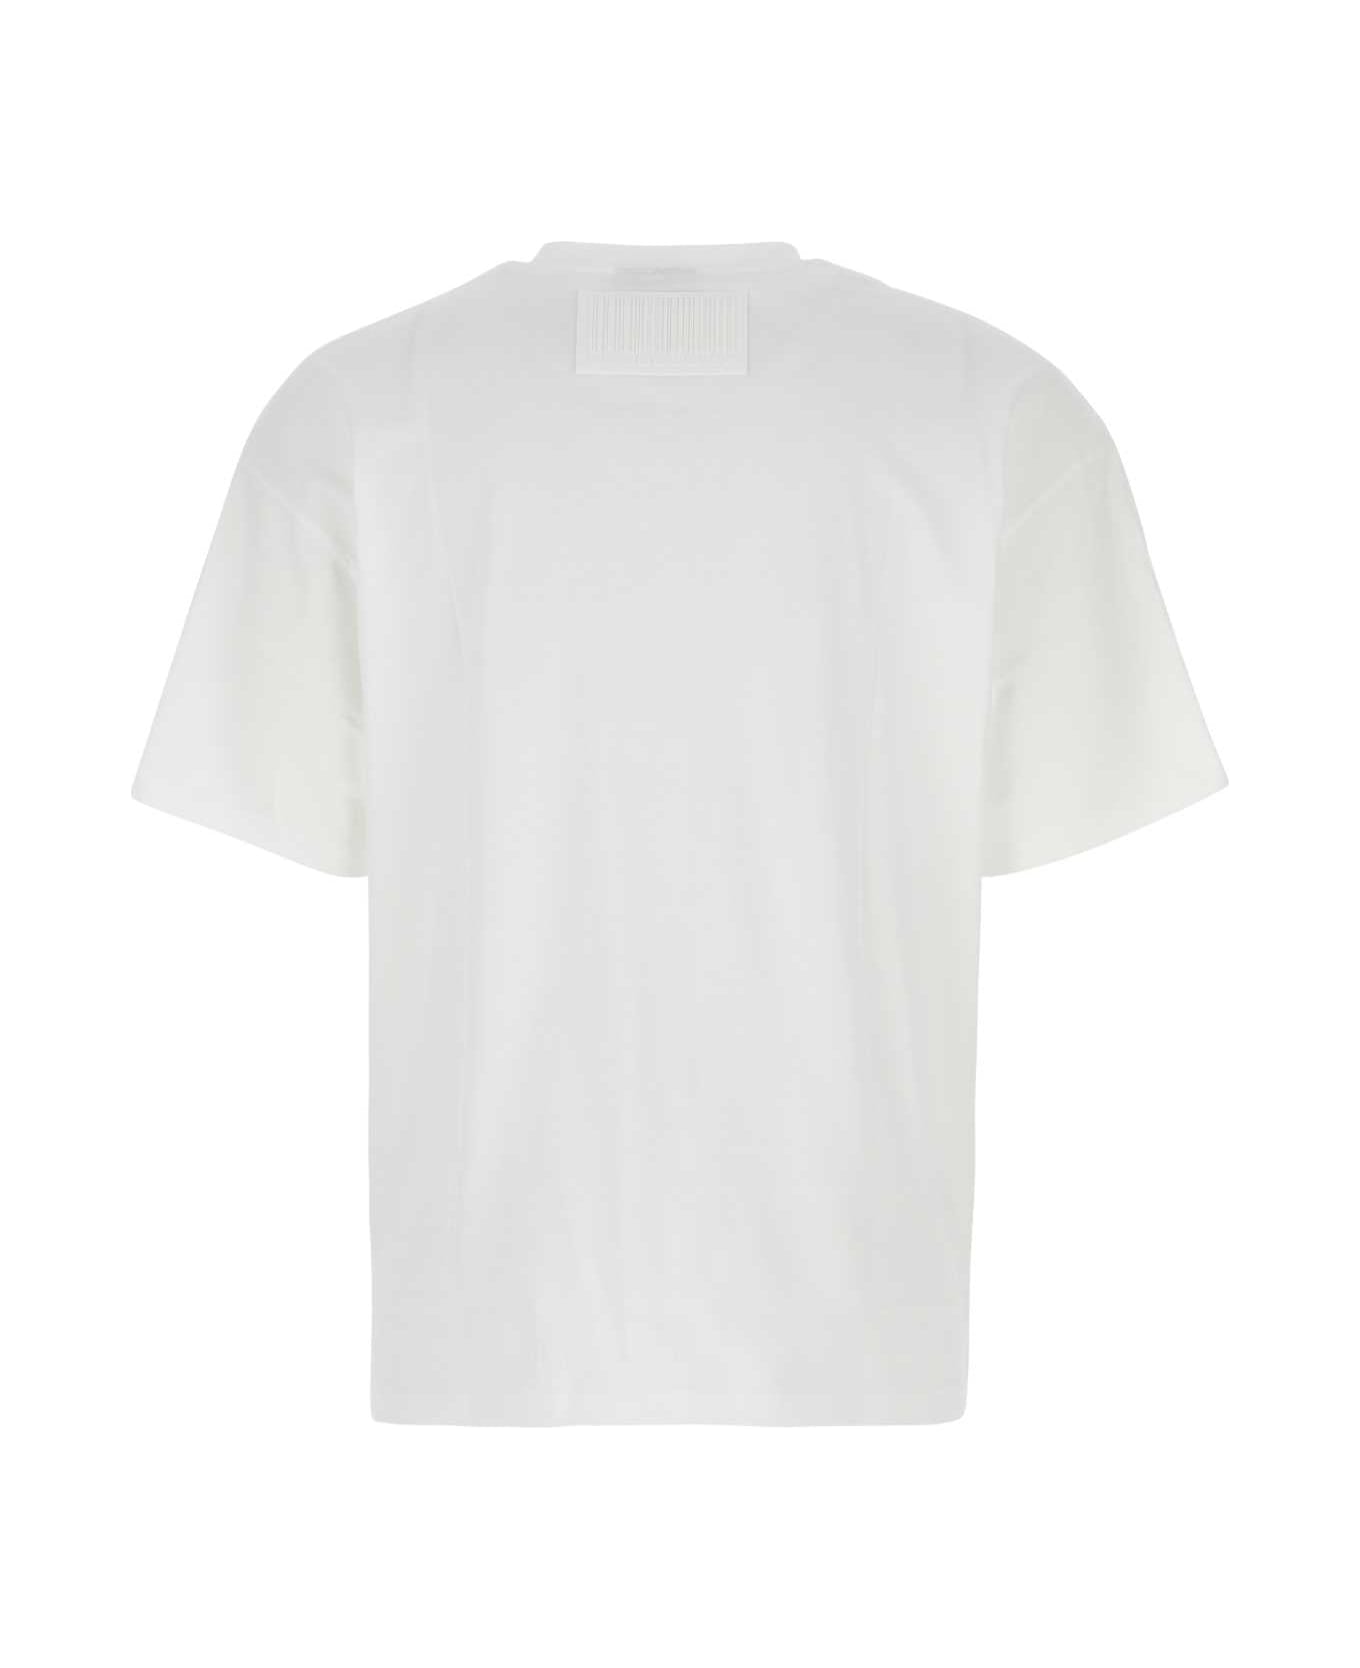 VTMNTS White Cotton T-shirt - WHITE シャツ